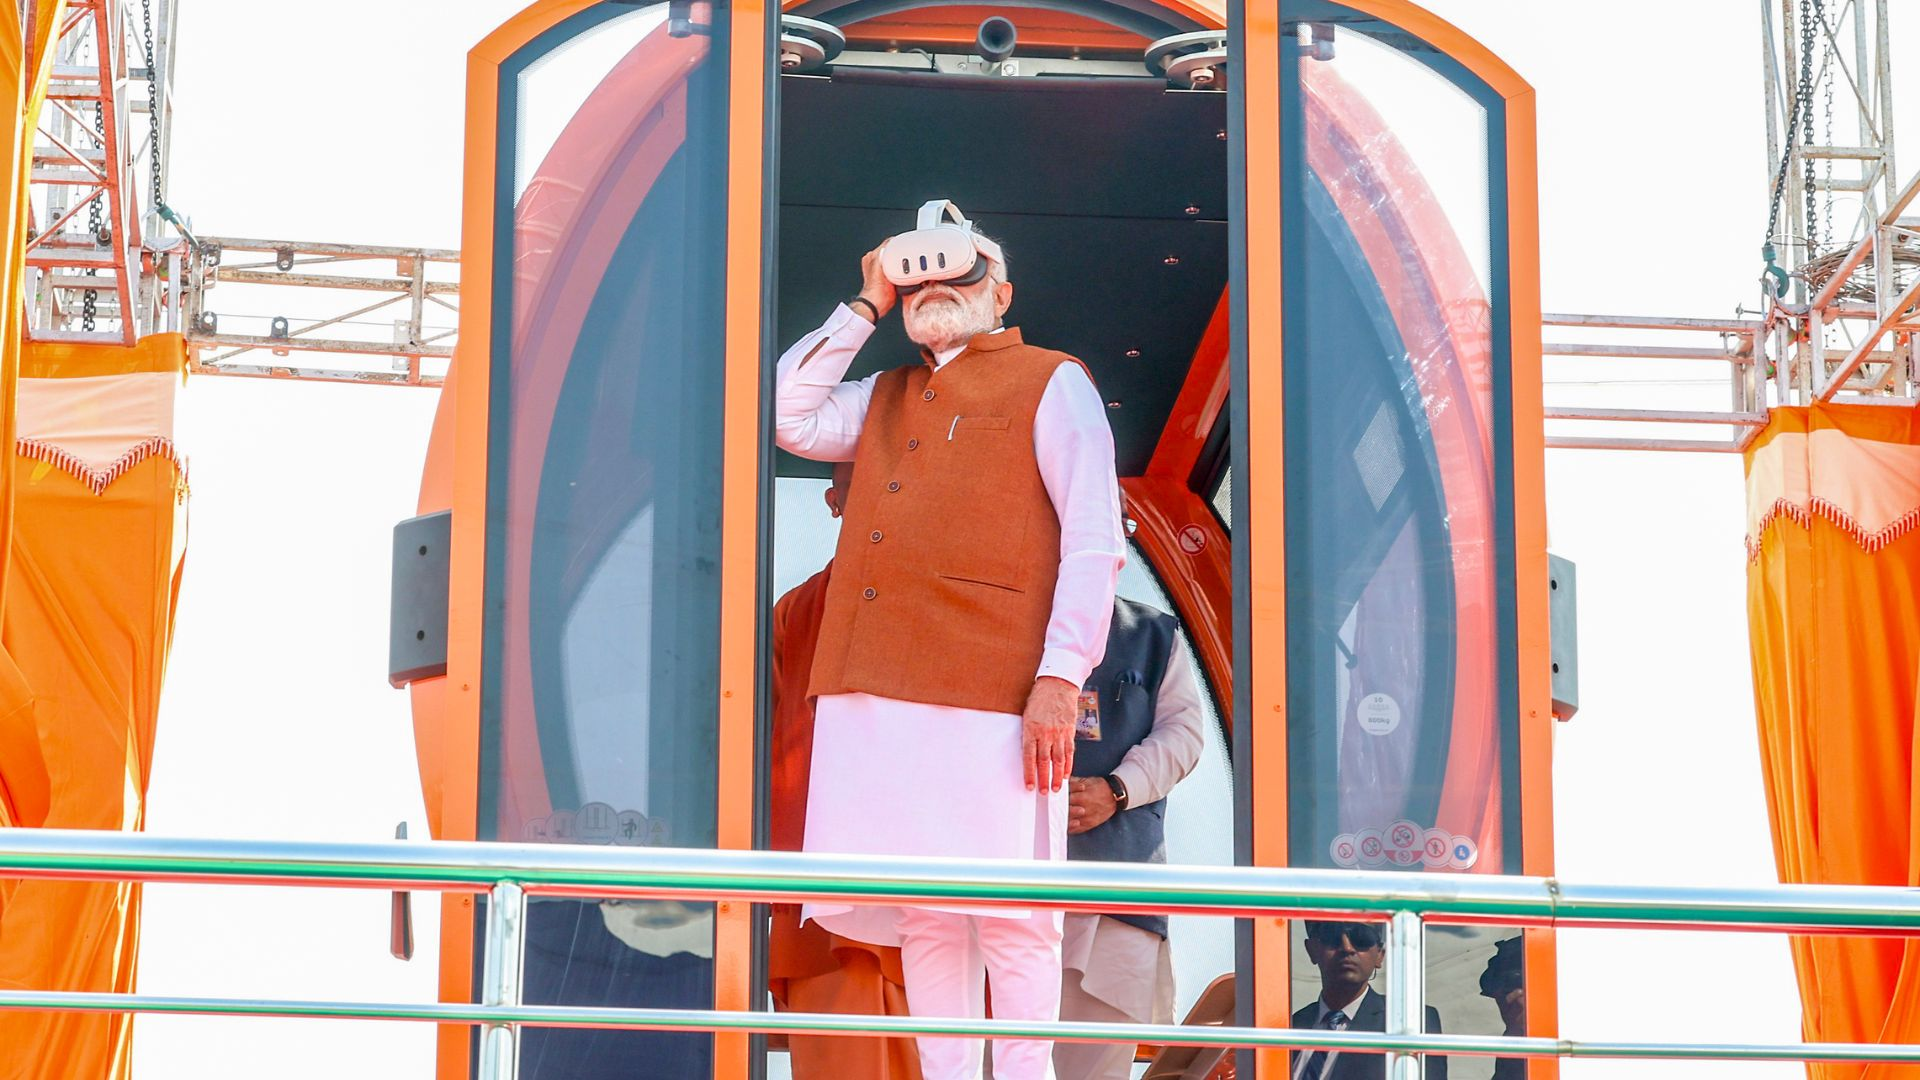 PM Modi to Inaugurate Sudarshan Setu Bridge and AIIMS Facilities in Gujarat